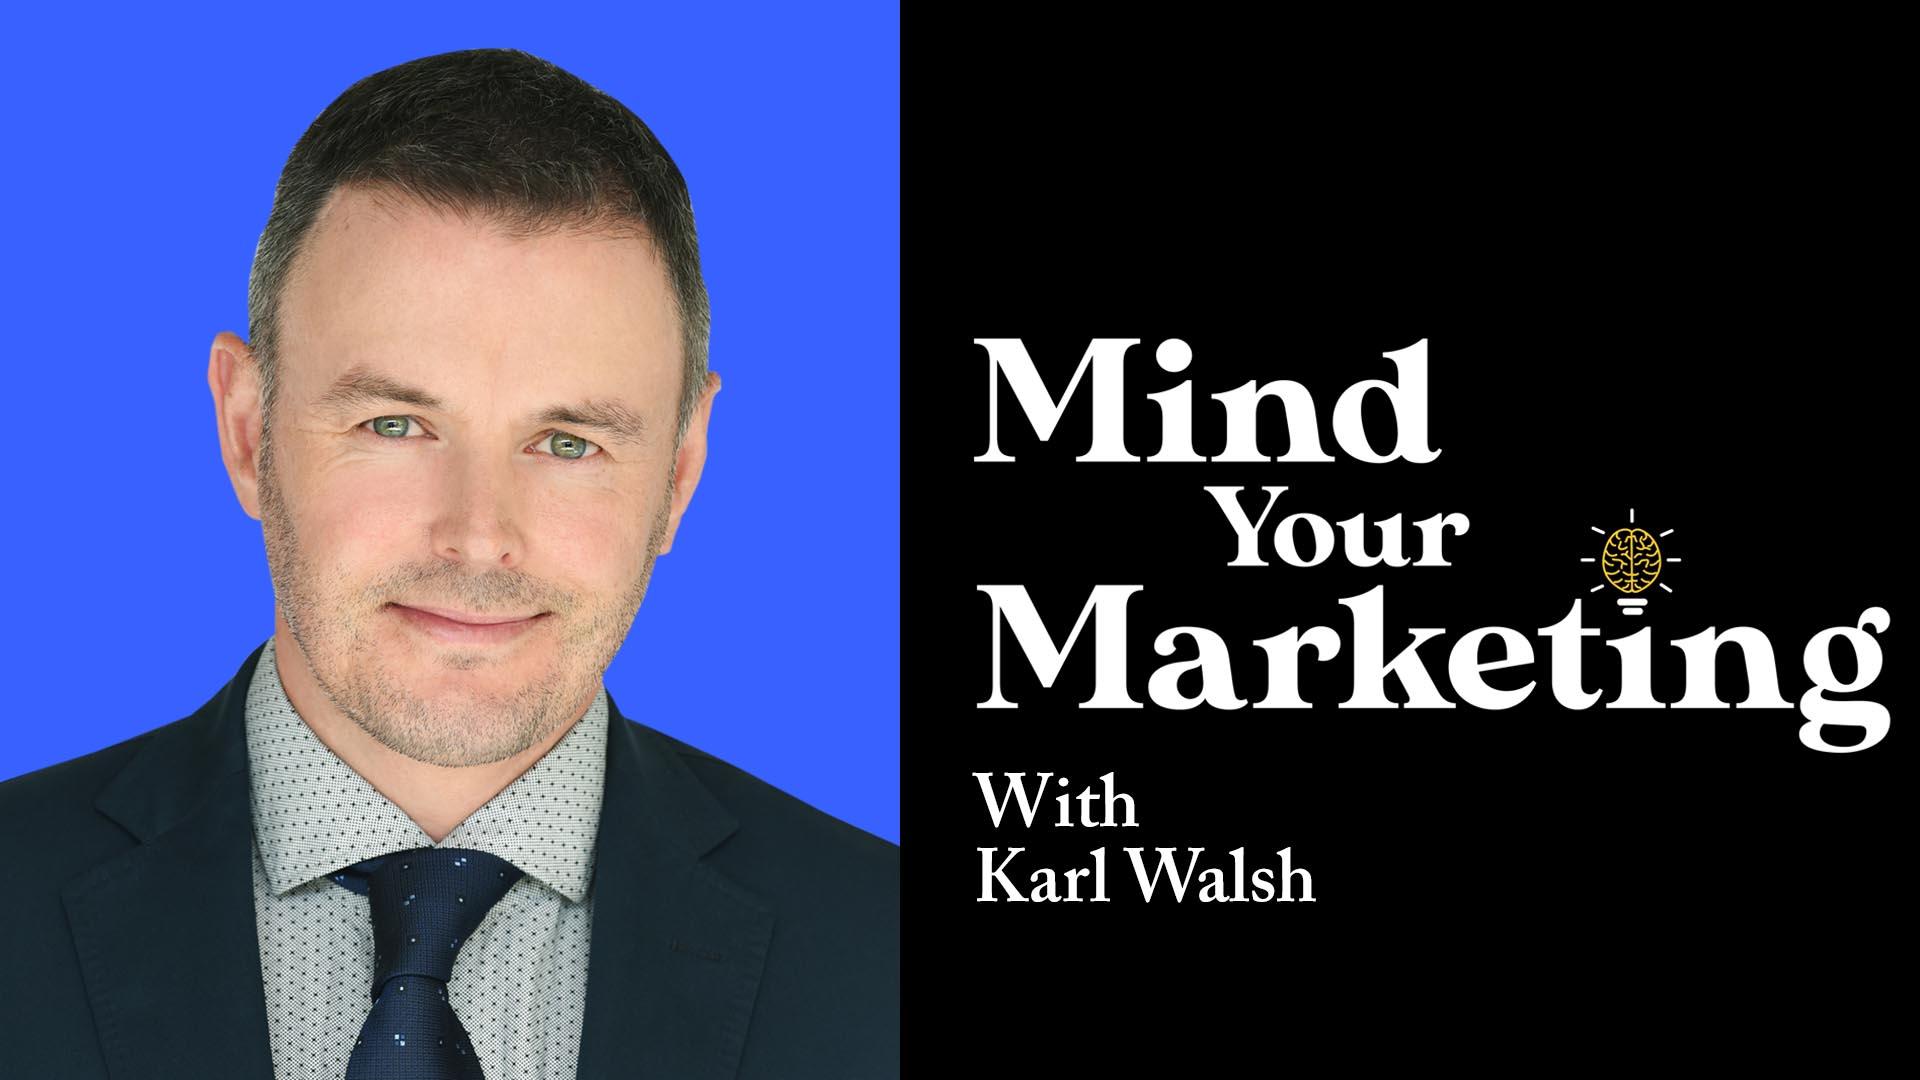 Karl Walsh